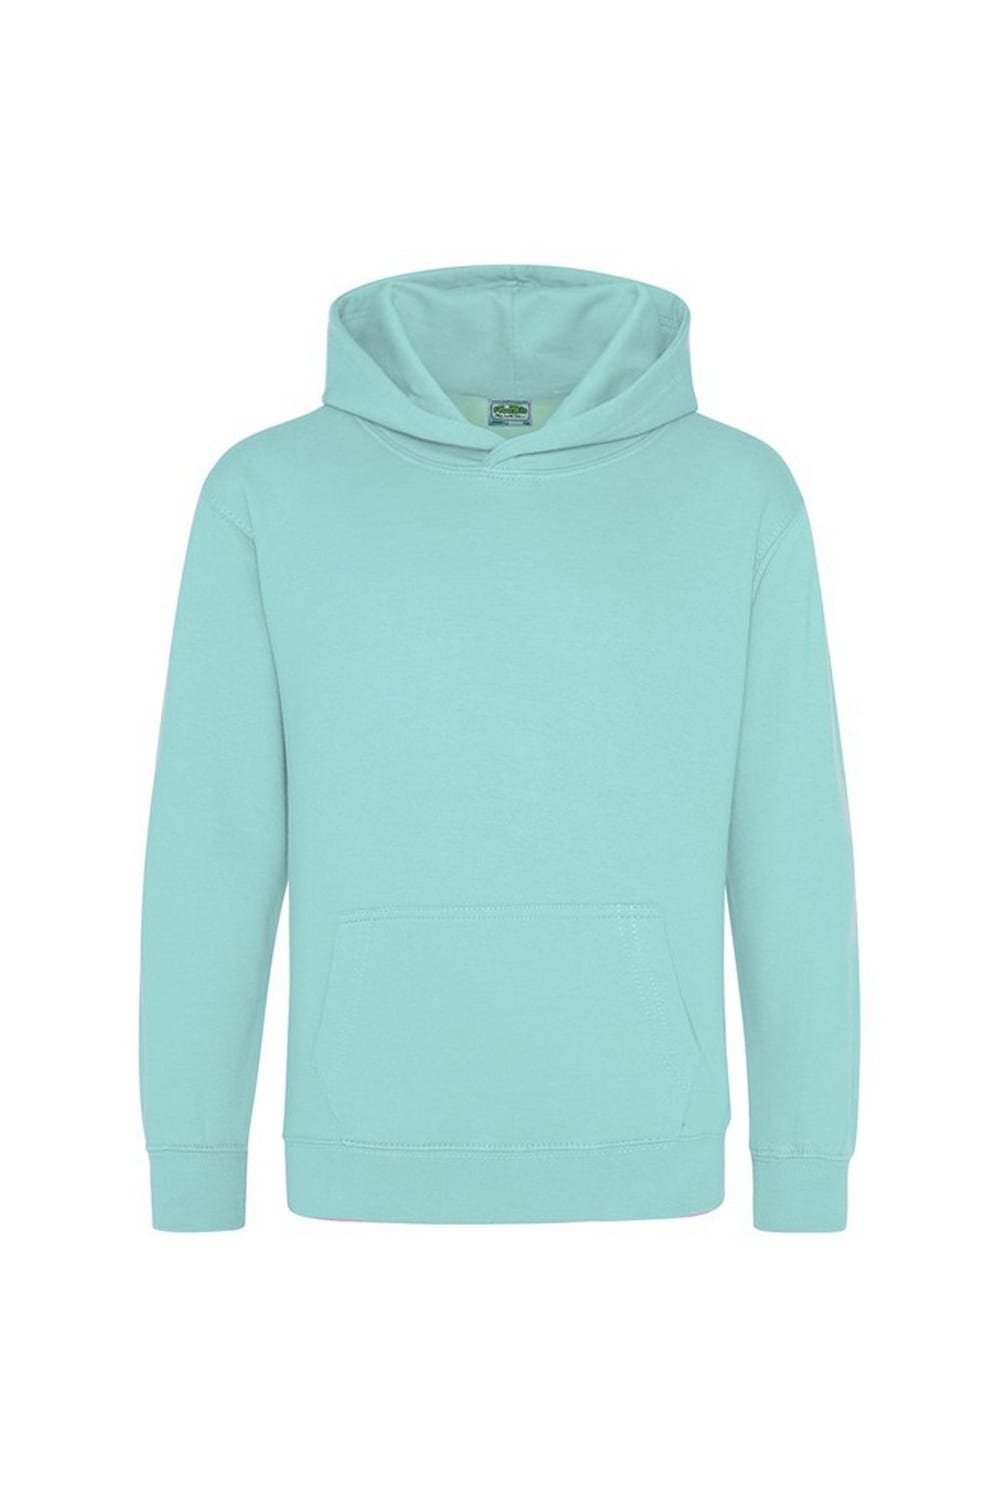 Kids Unisex Hooded Sweatshirt / Hoodie / Schoolwear -Peppermint